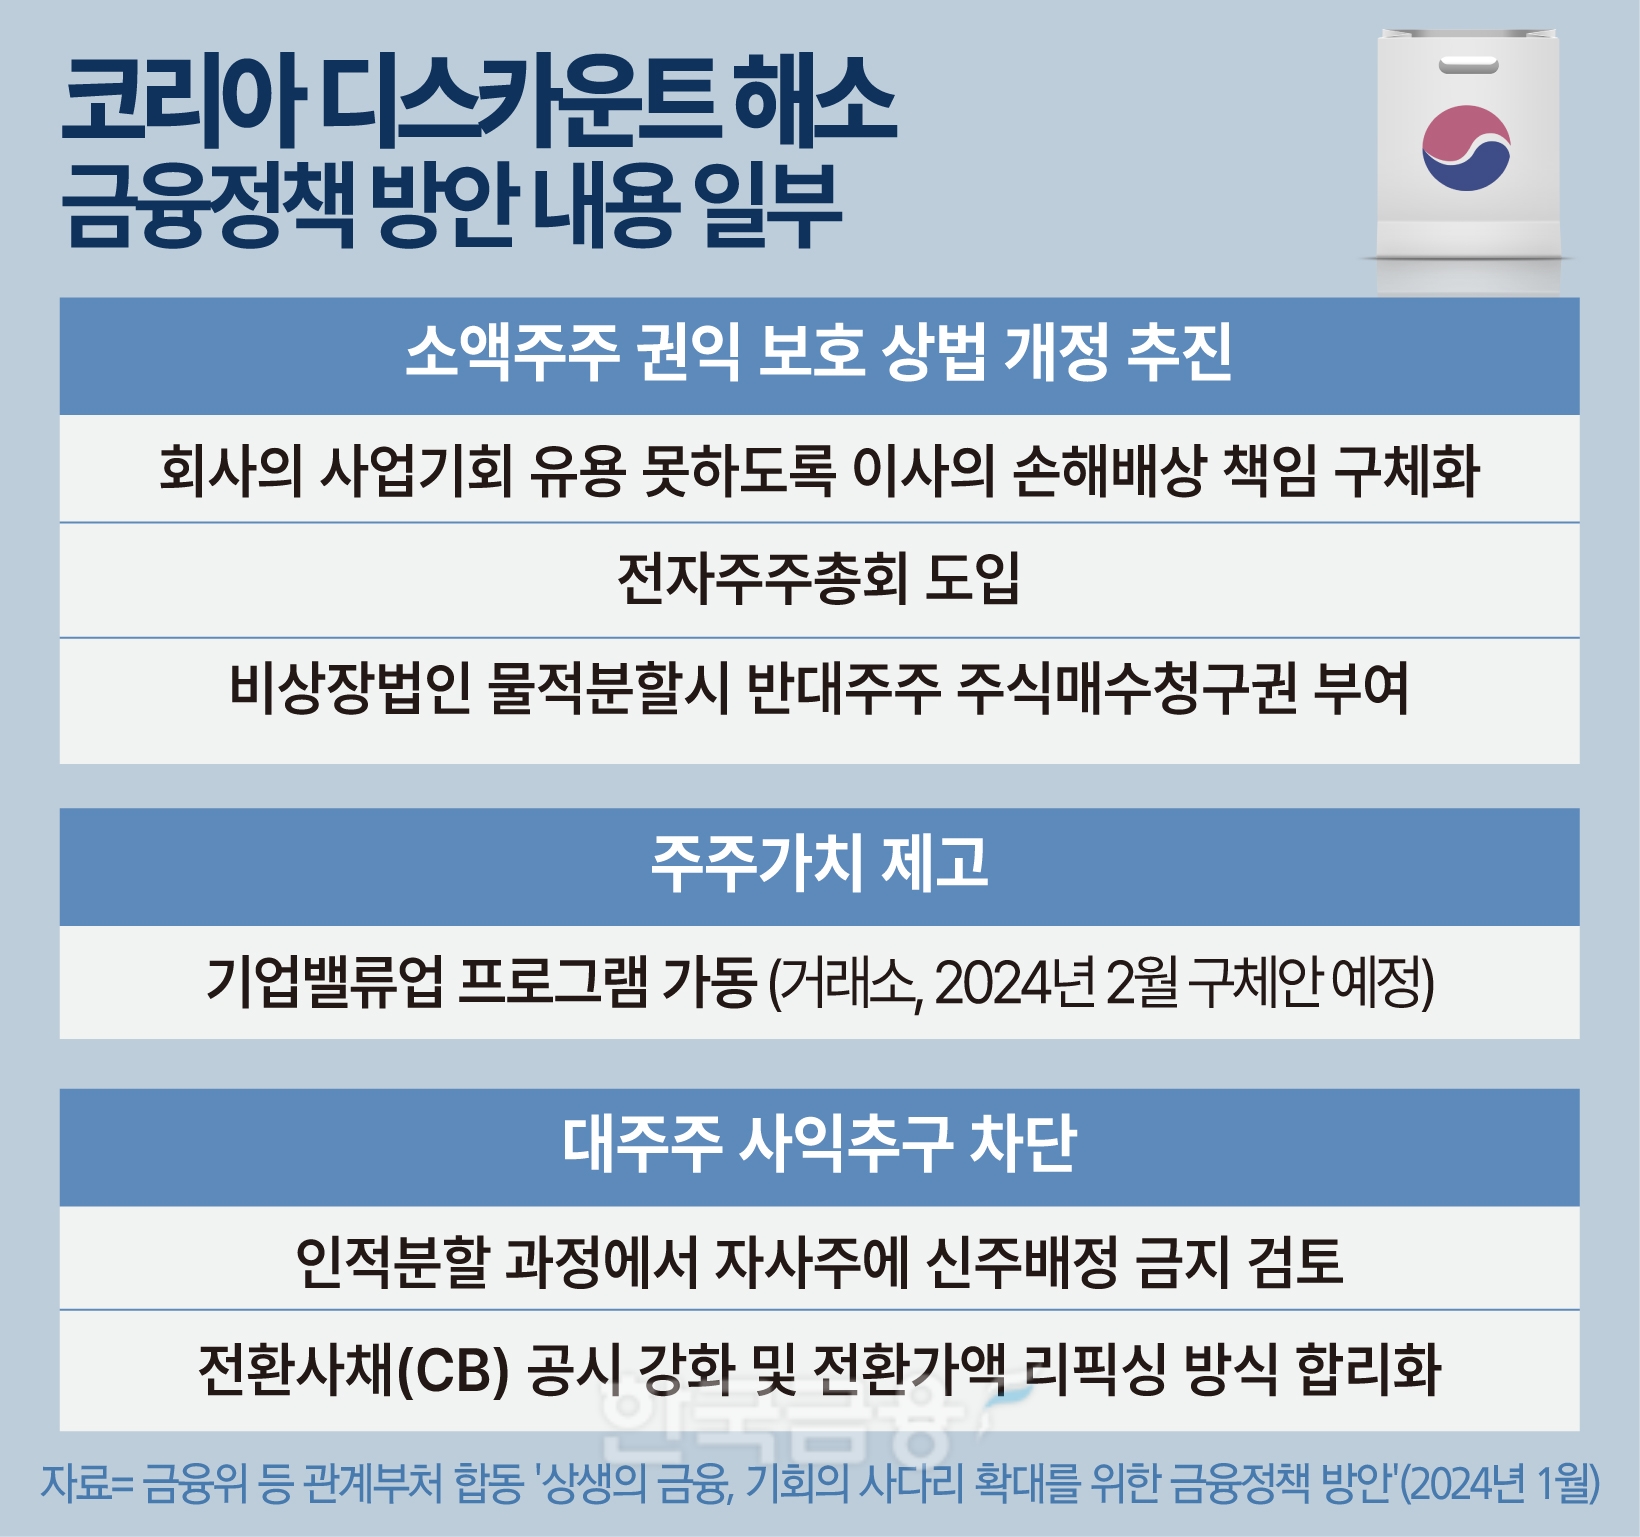 韓 증시 해법, 워런 버핏 日 투자서 찾는다…"기업거버넌스 개혁 핵심" [코리아 디스카운트 CUT (하)]